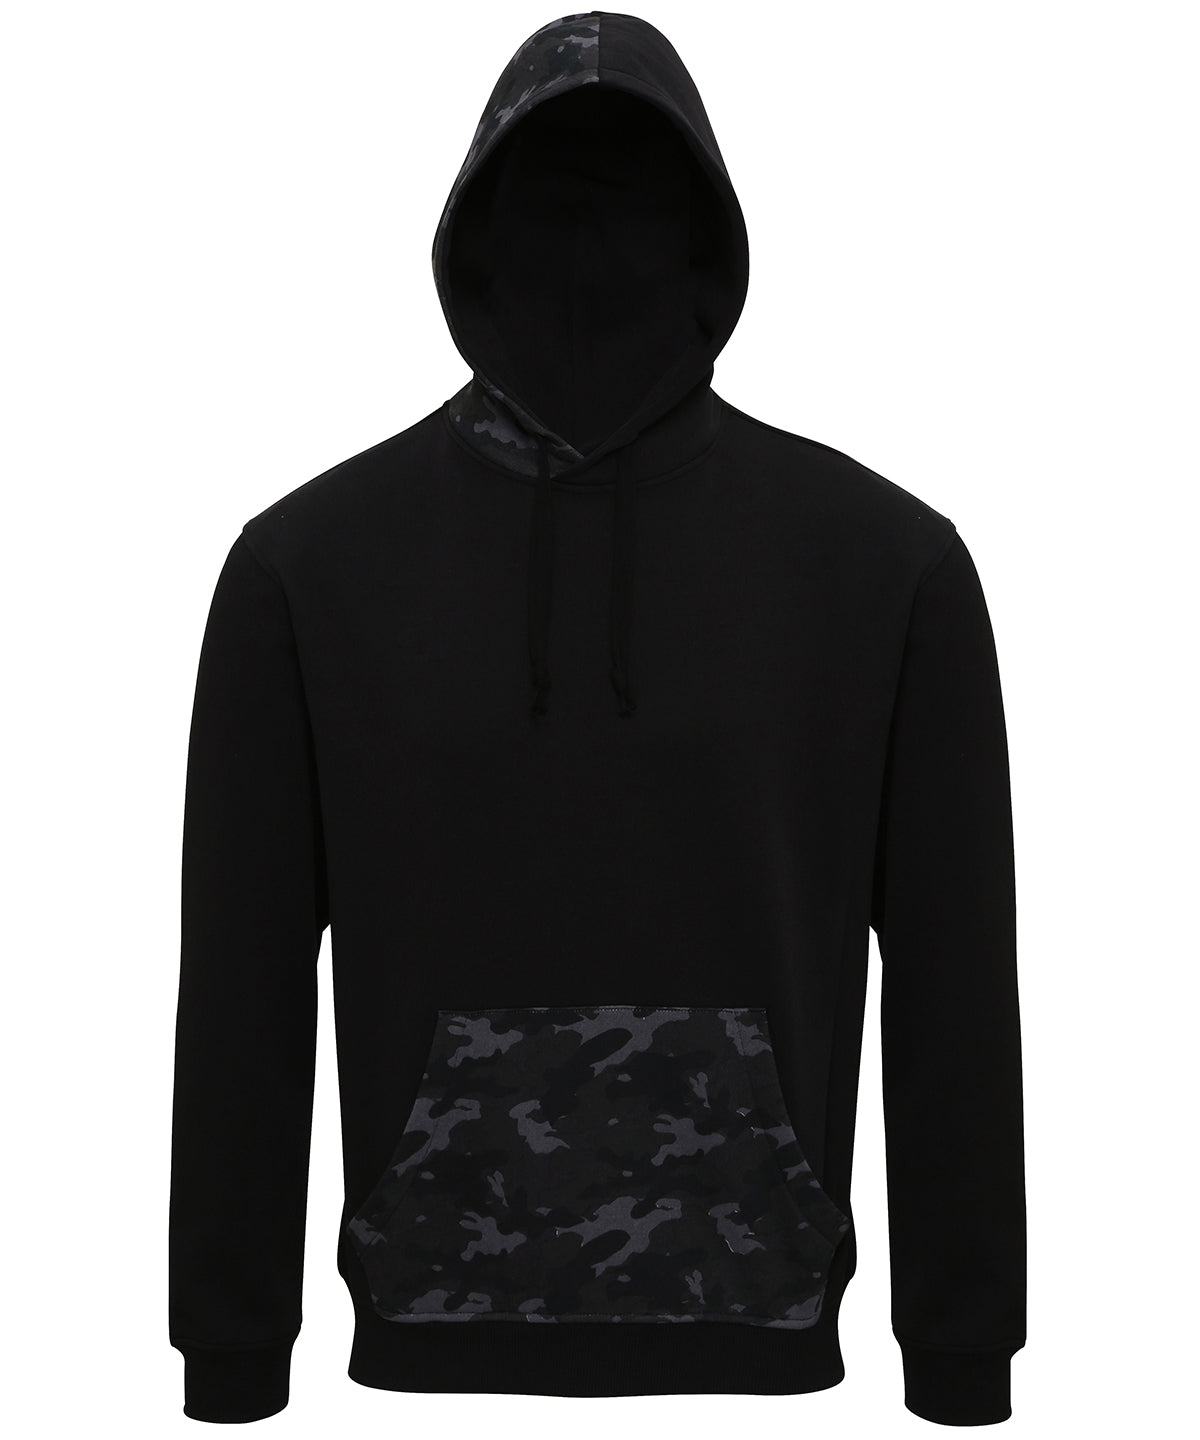 Personalised Hoodies - Black Asquith & Fox Men's camo trimmed hoodie